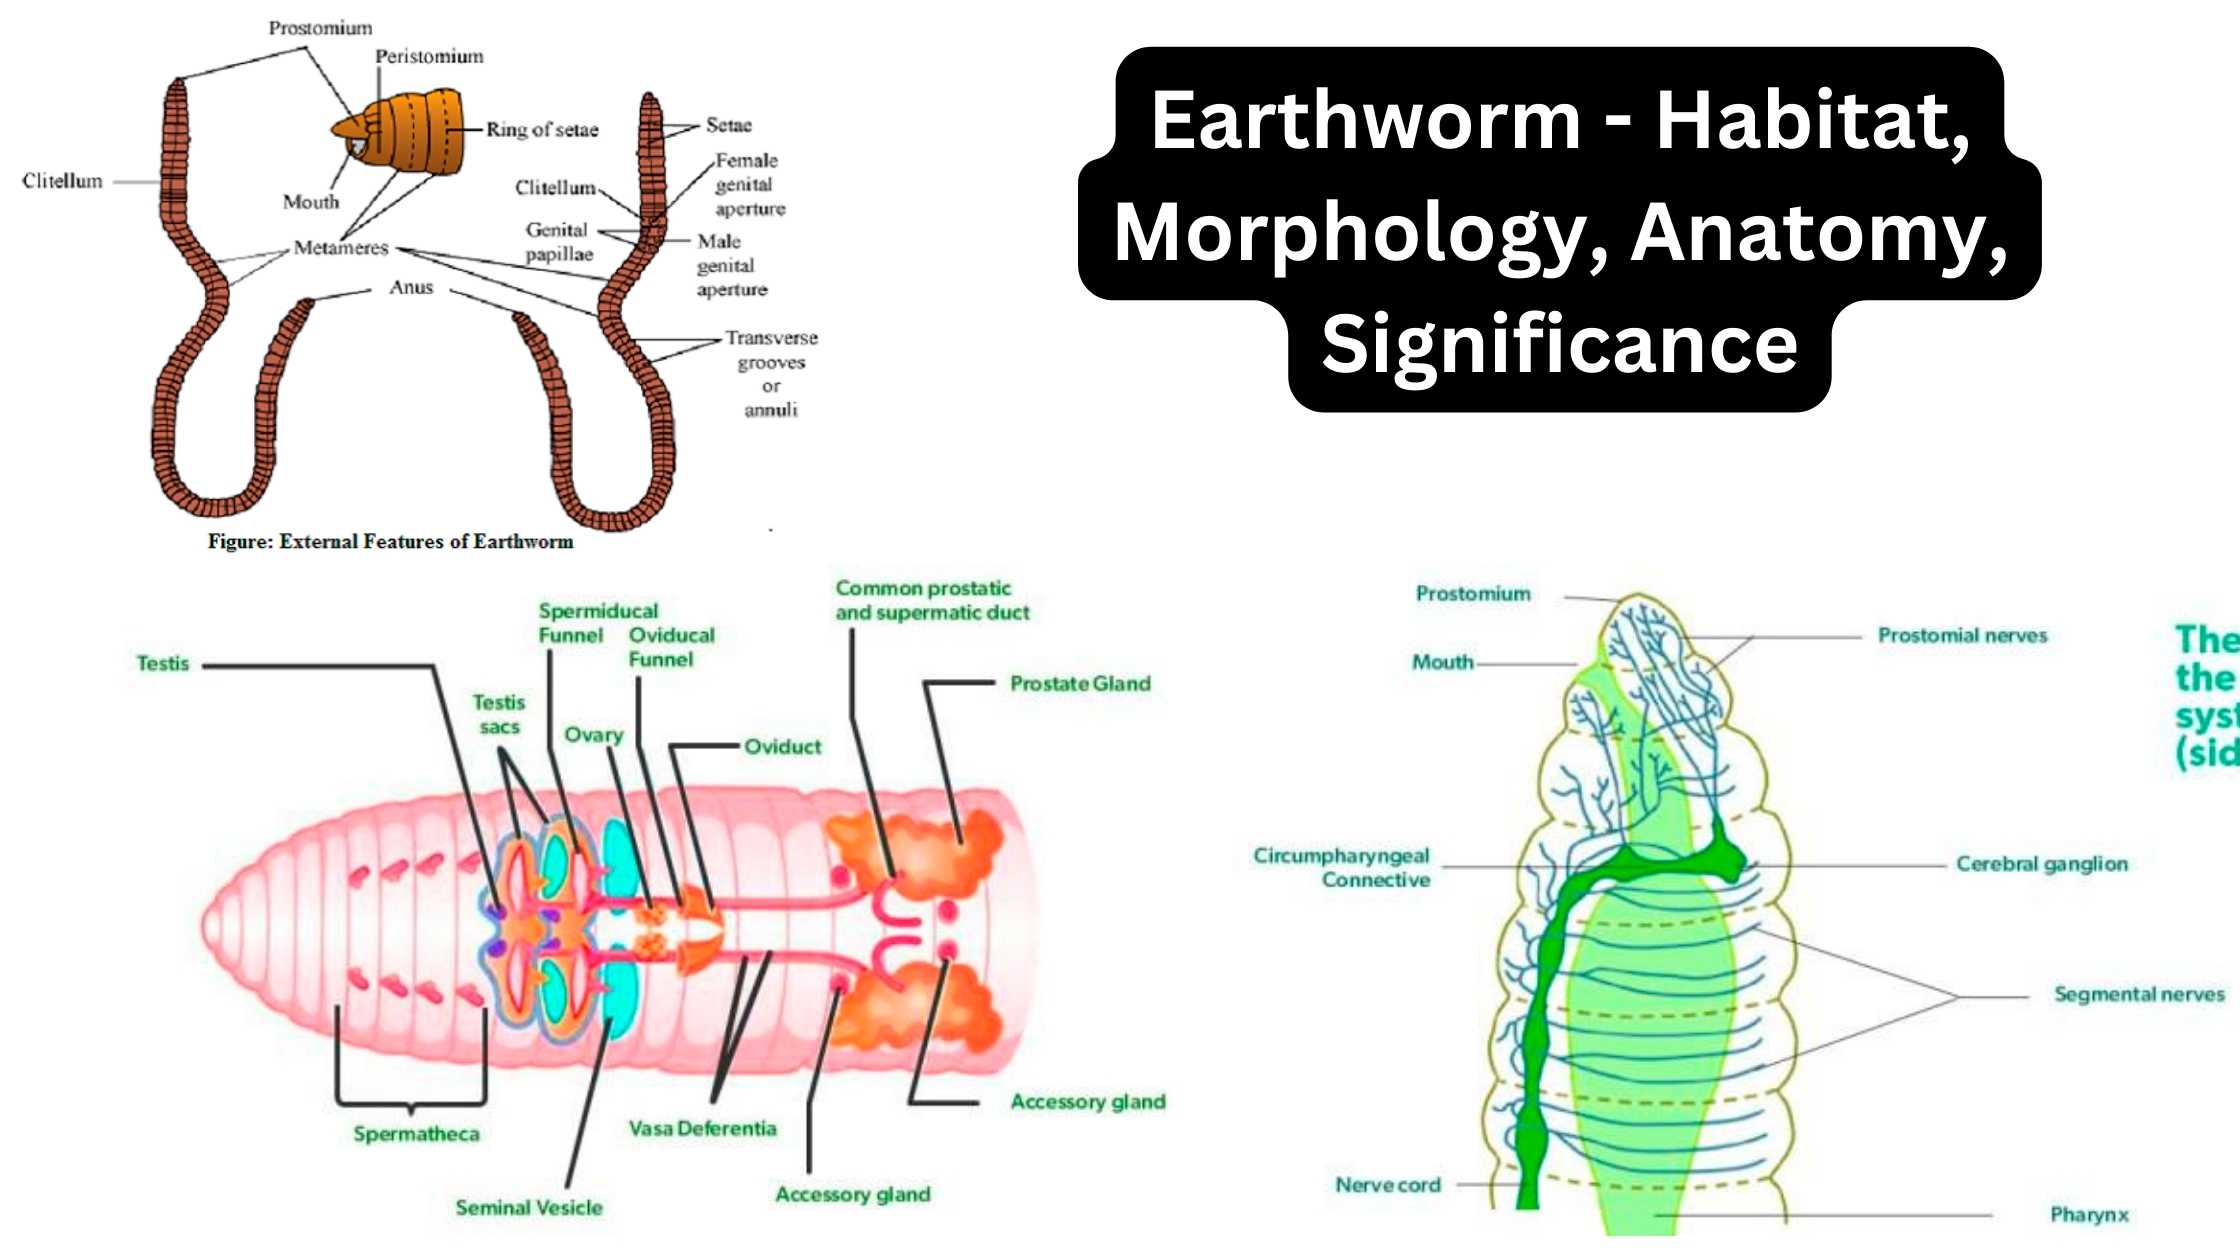 Earthworm - Habitat, Morphology, Anatomy, Significance